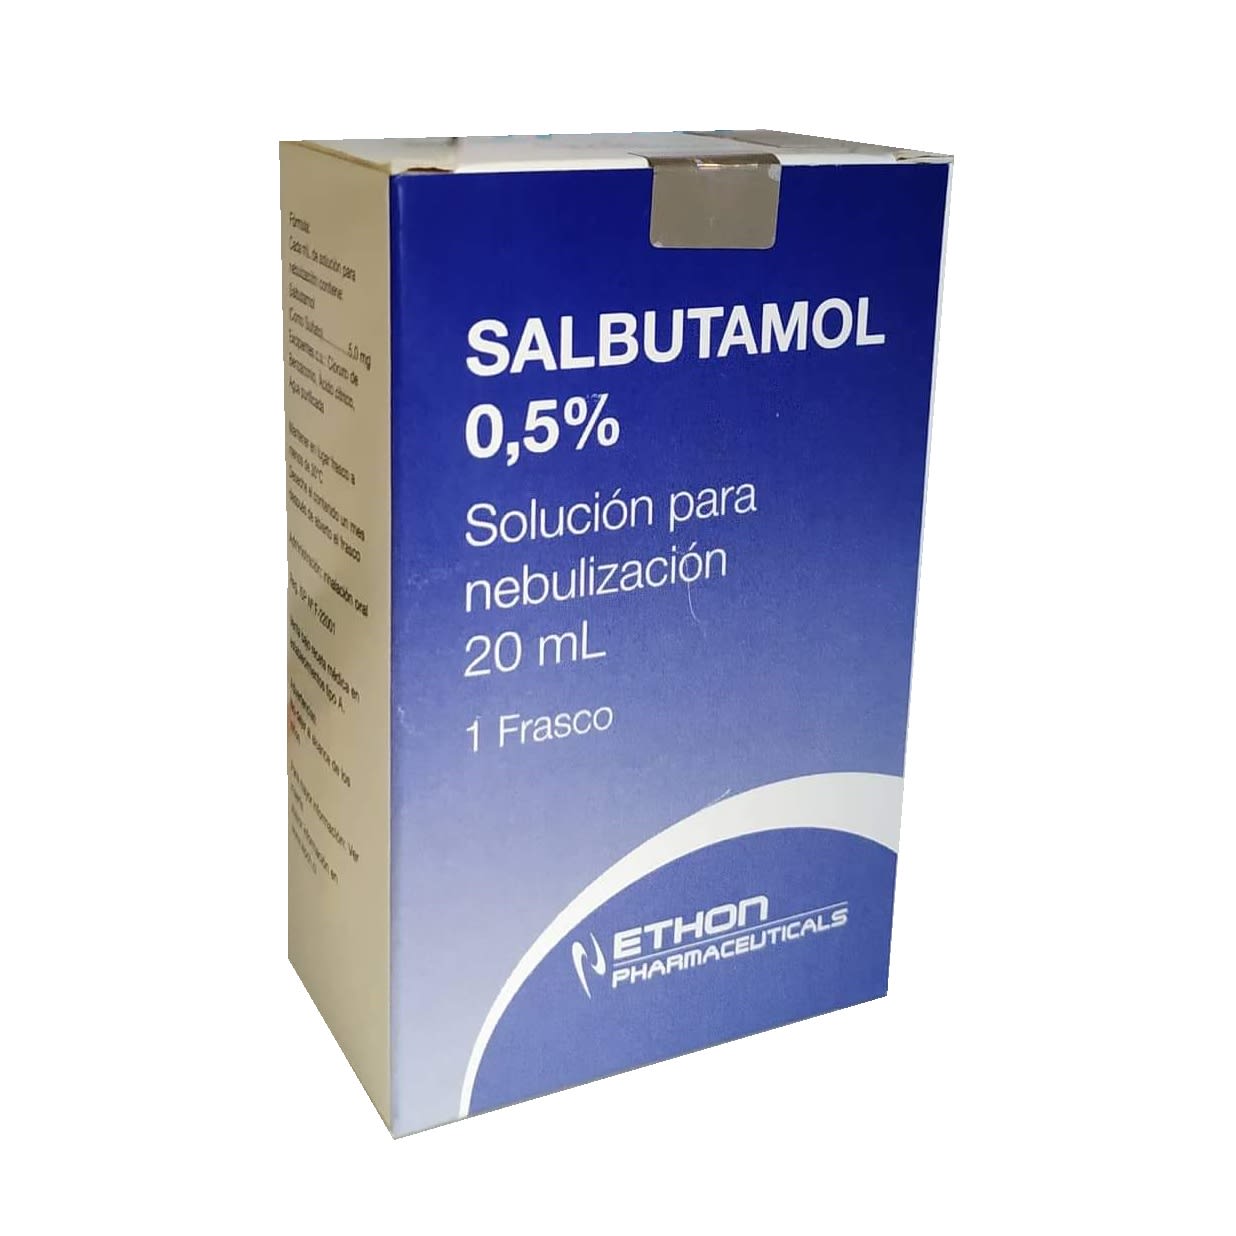 Salbutamol 0,5% 20 mL solución para nebulización - EASYFARMA